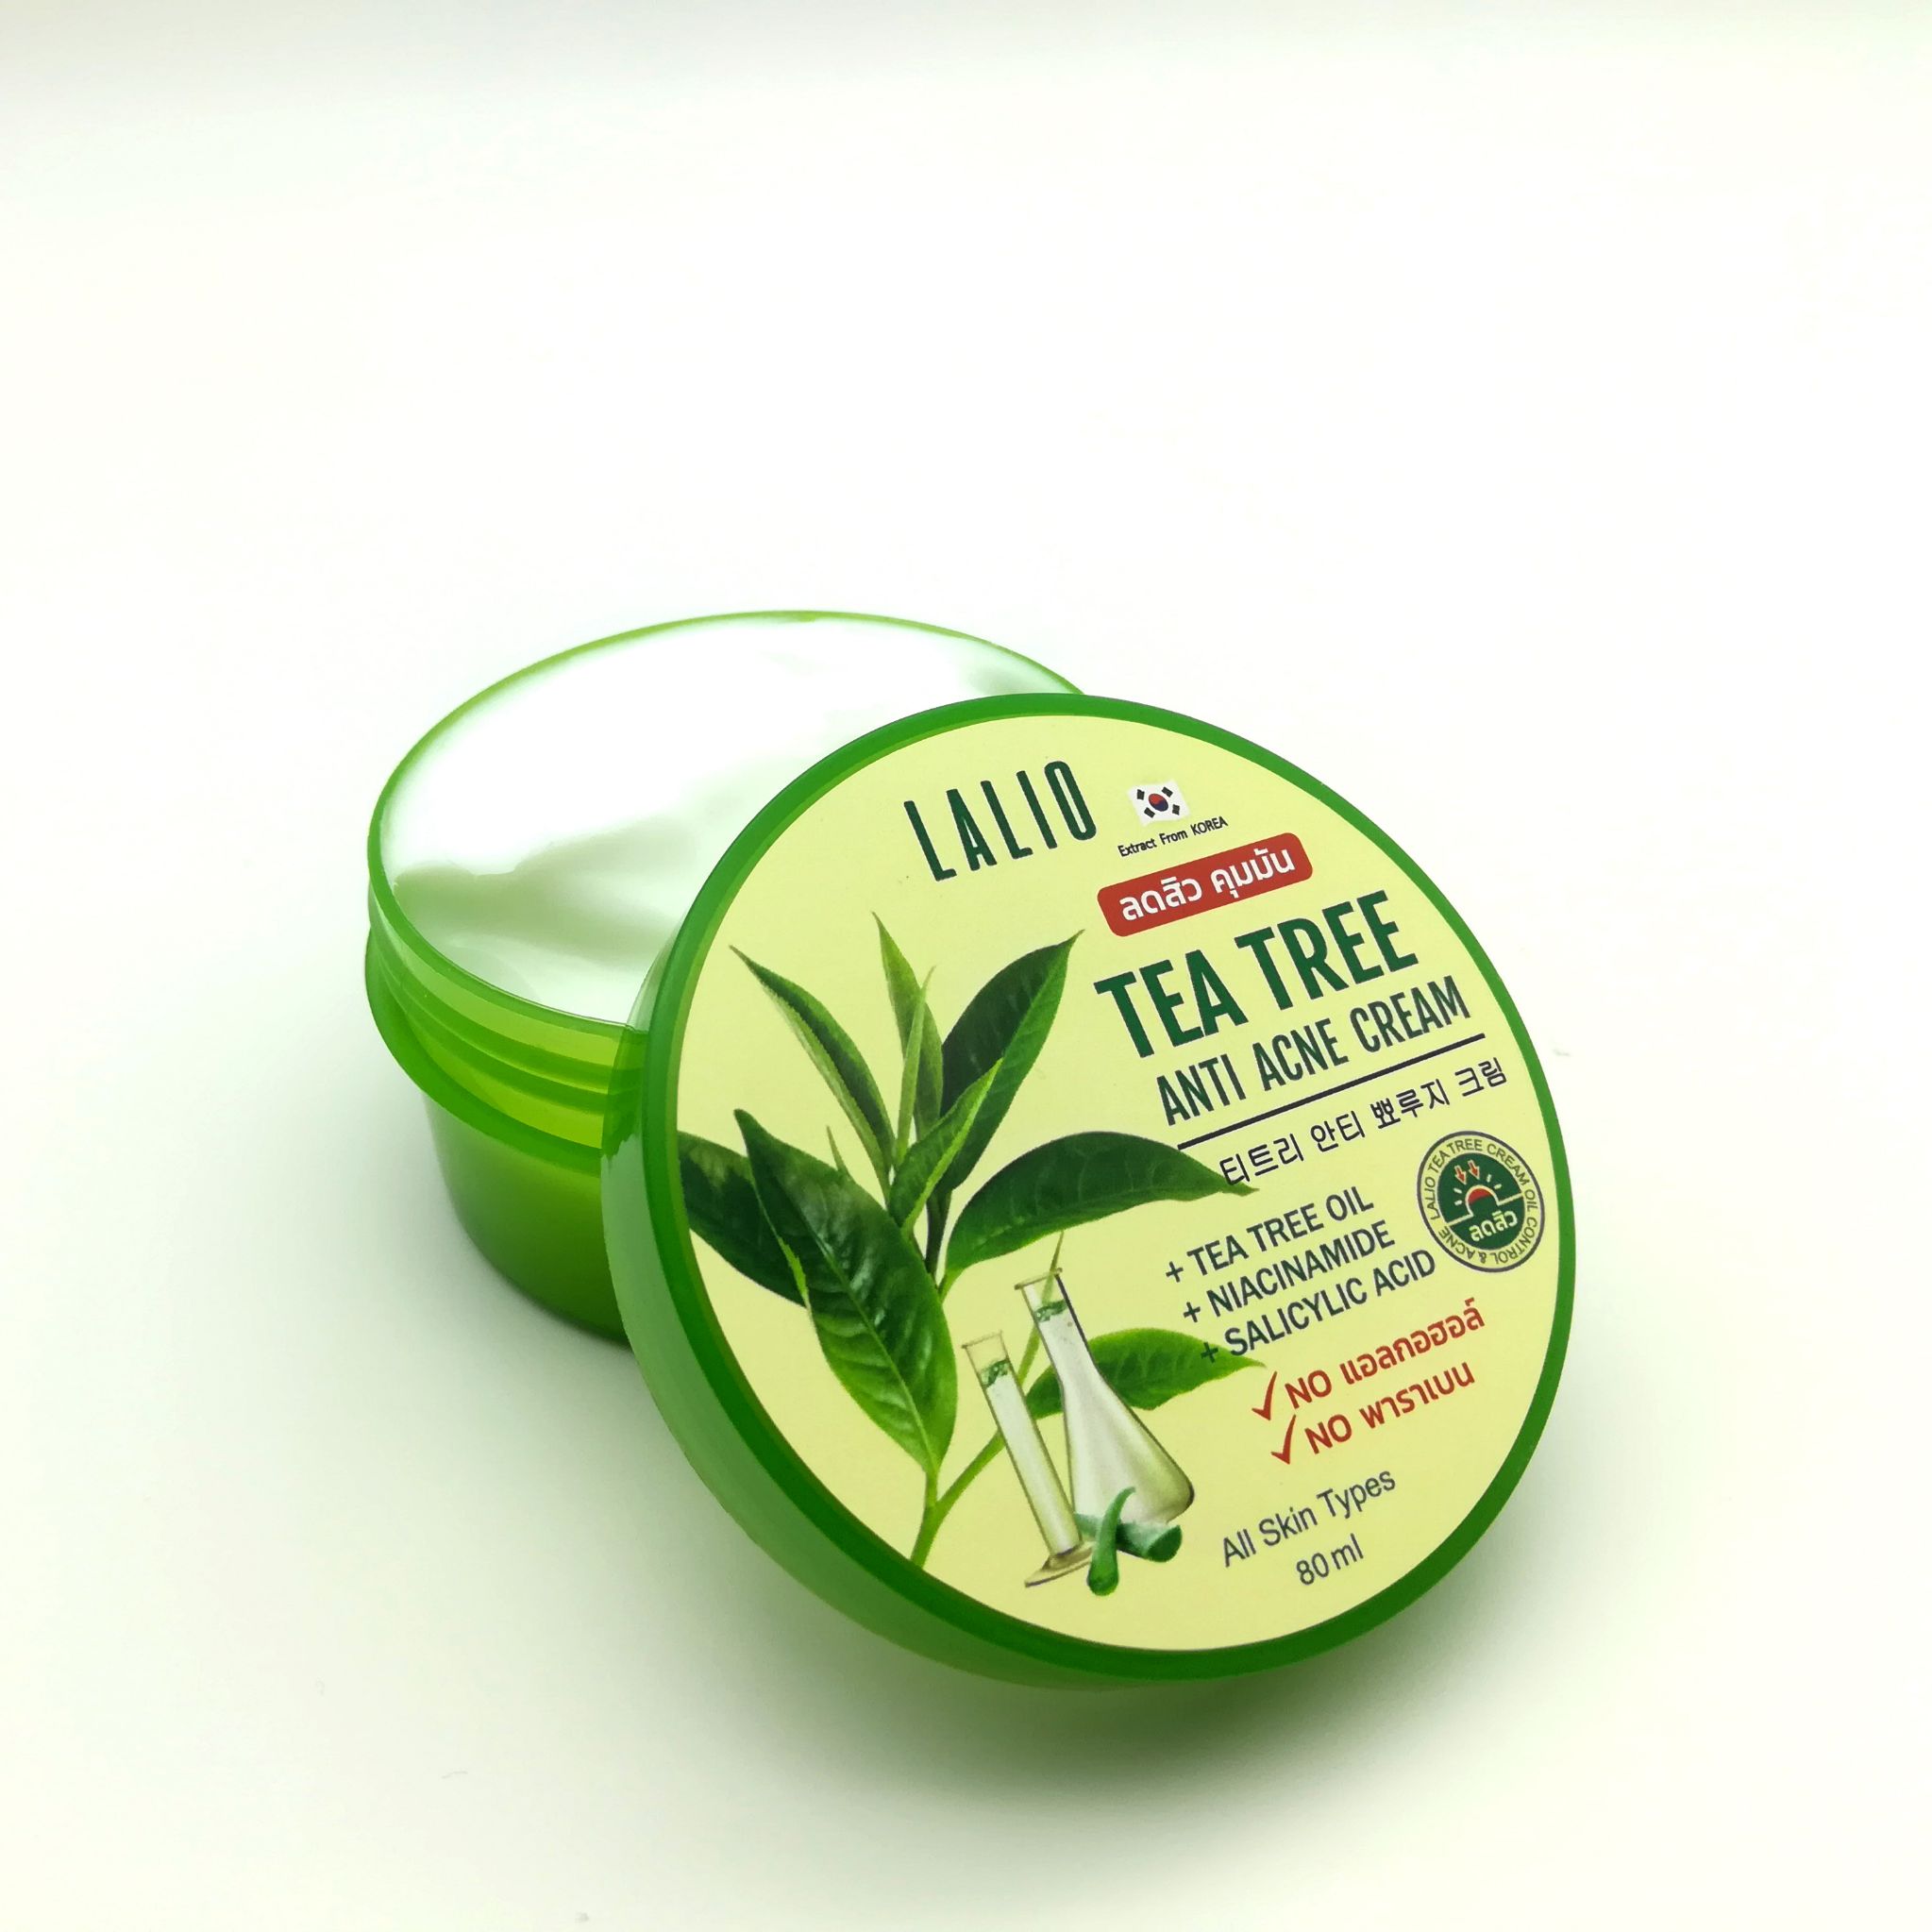 Lalio tea tree anti acne cream